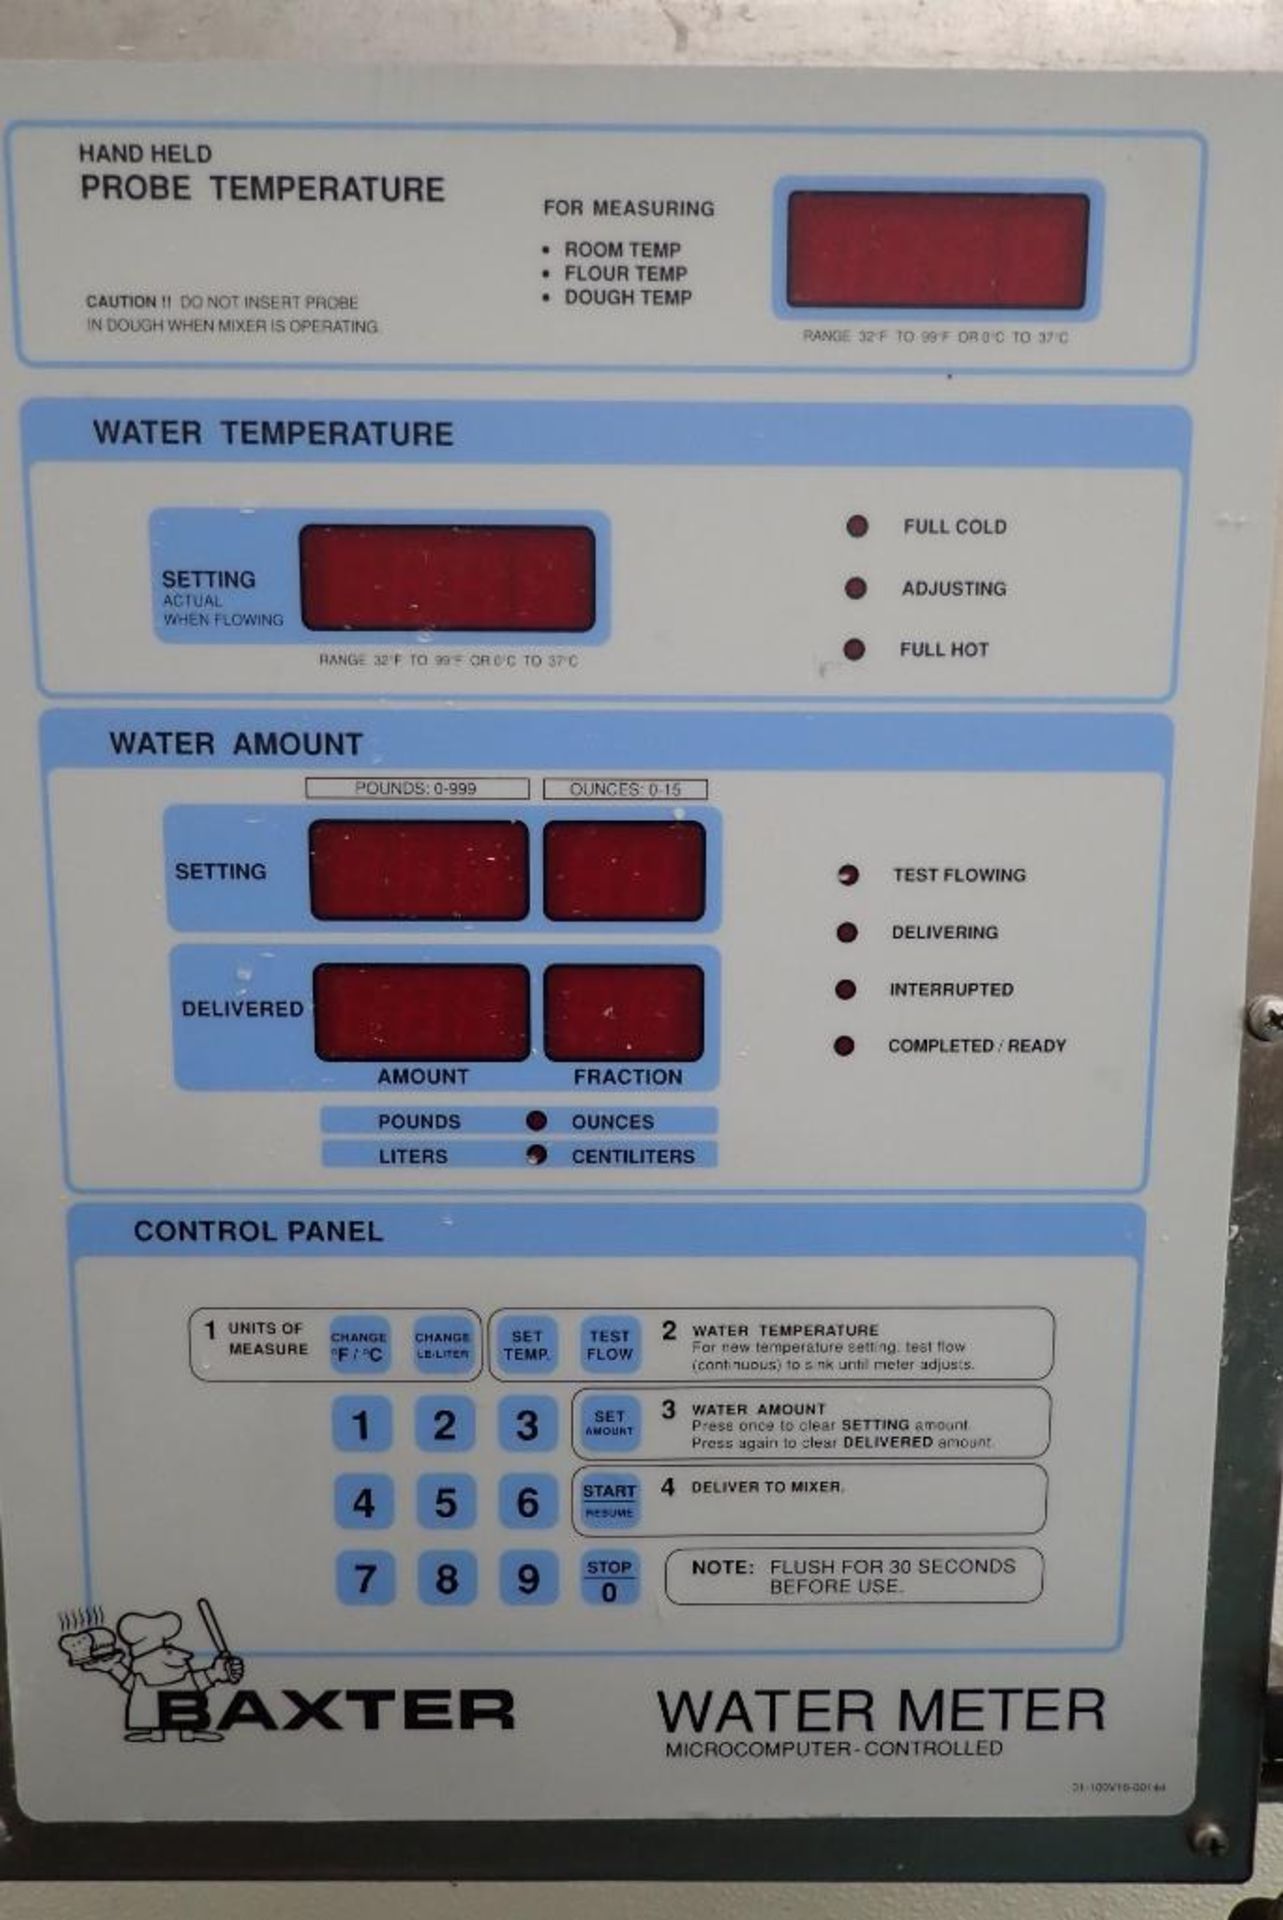 Baxter water meter - Image 4 of 5